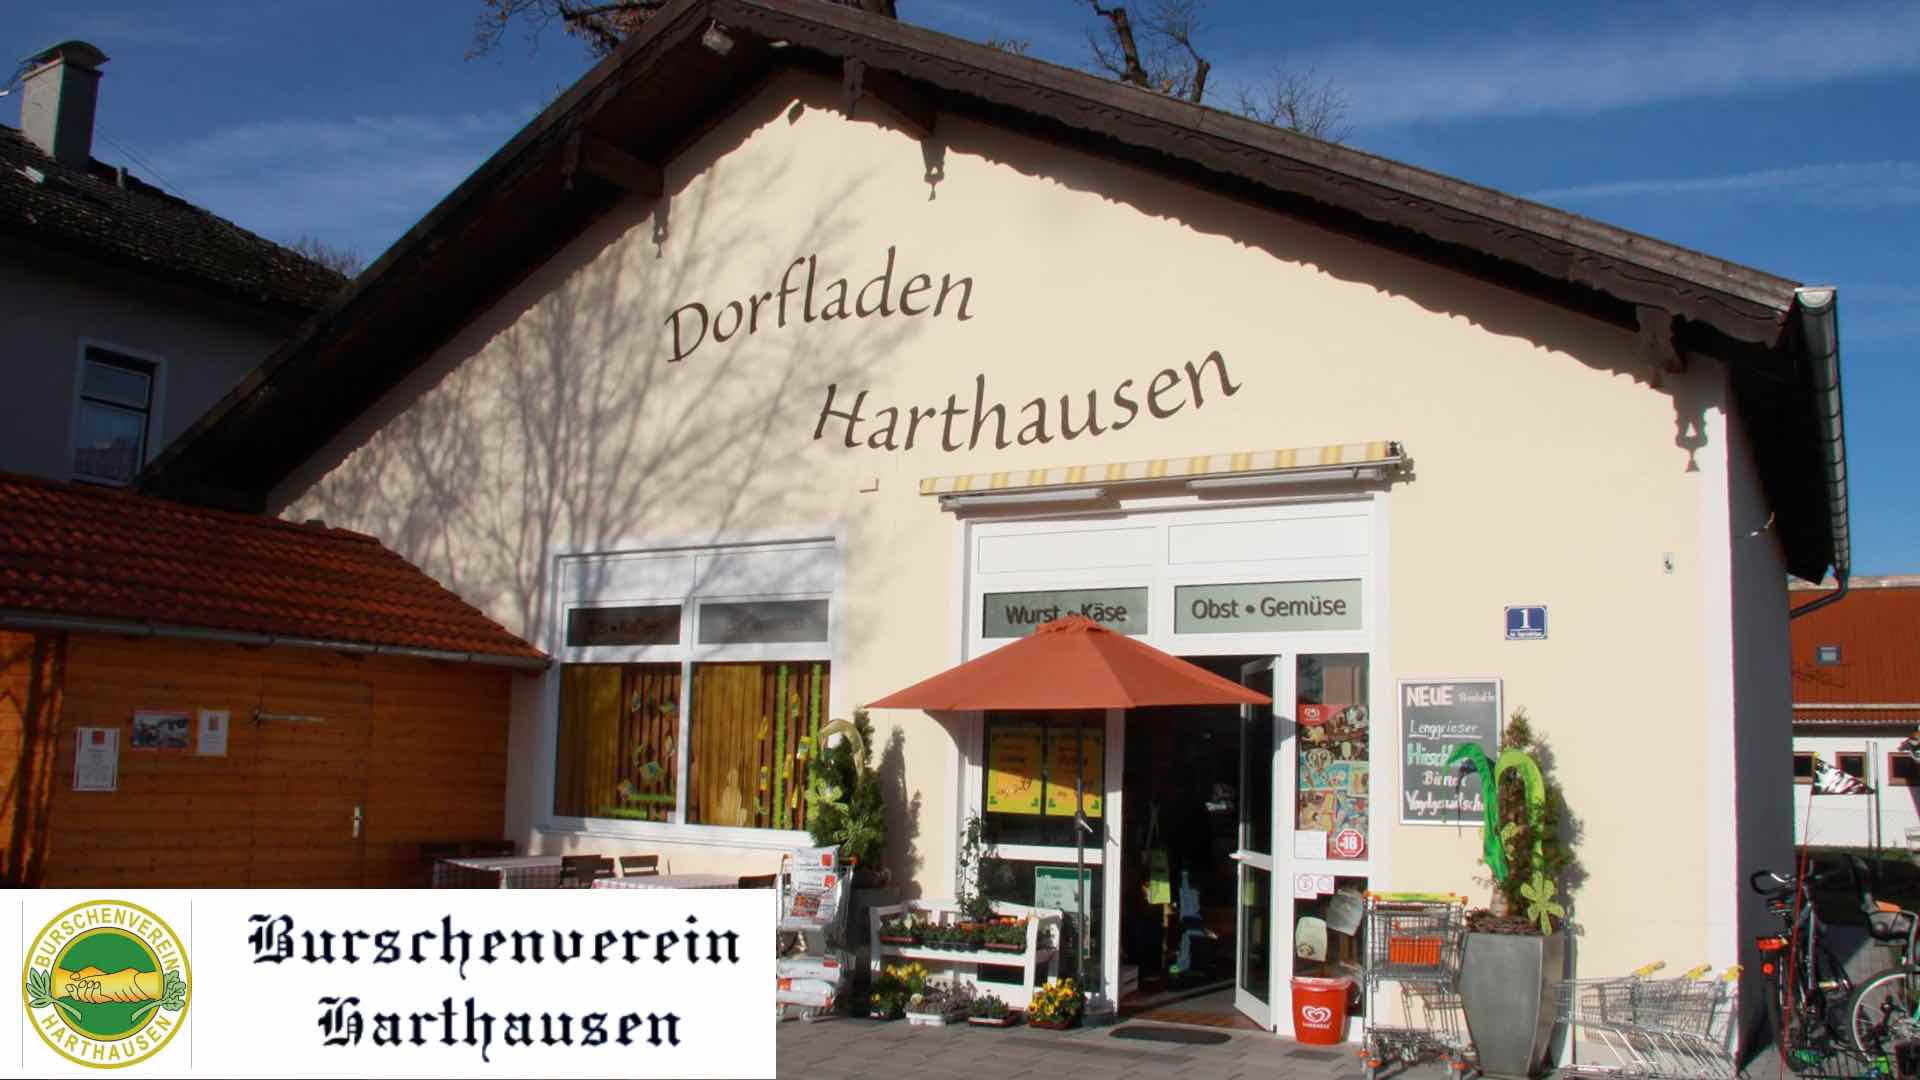 Buschenverein Dorfladen